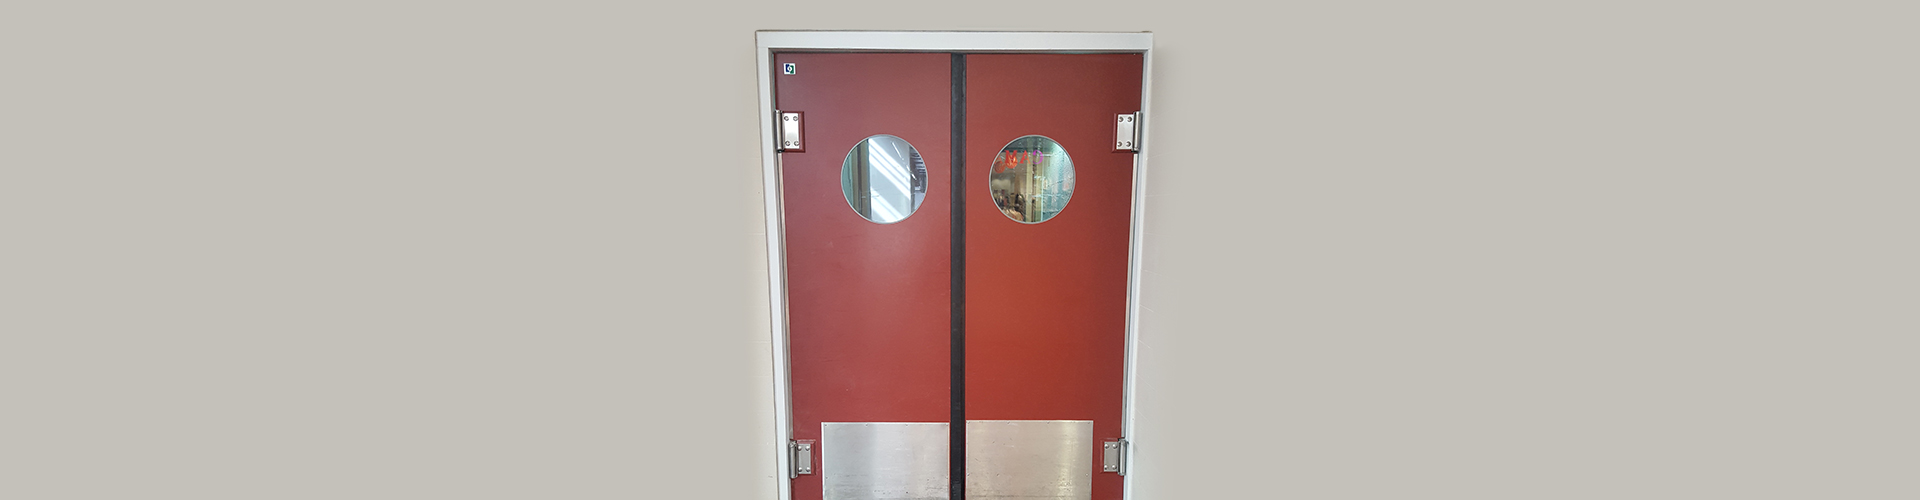 SPENLE rote Zweiwege-Tür aus Polyethylen